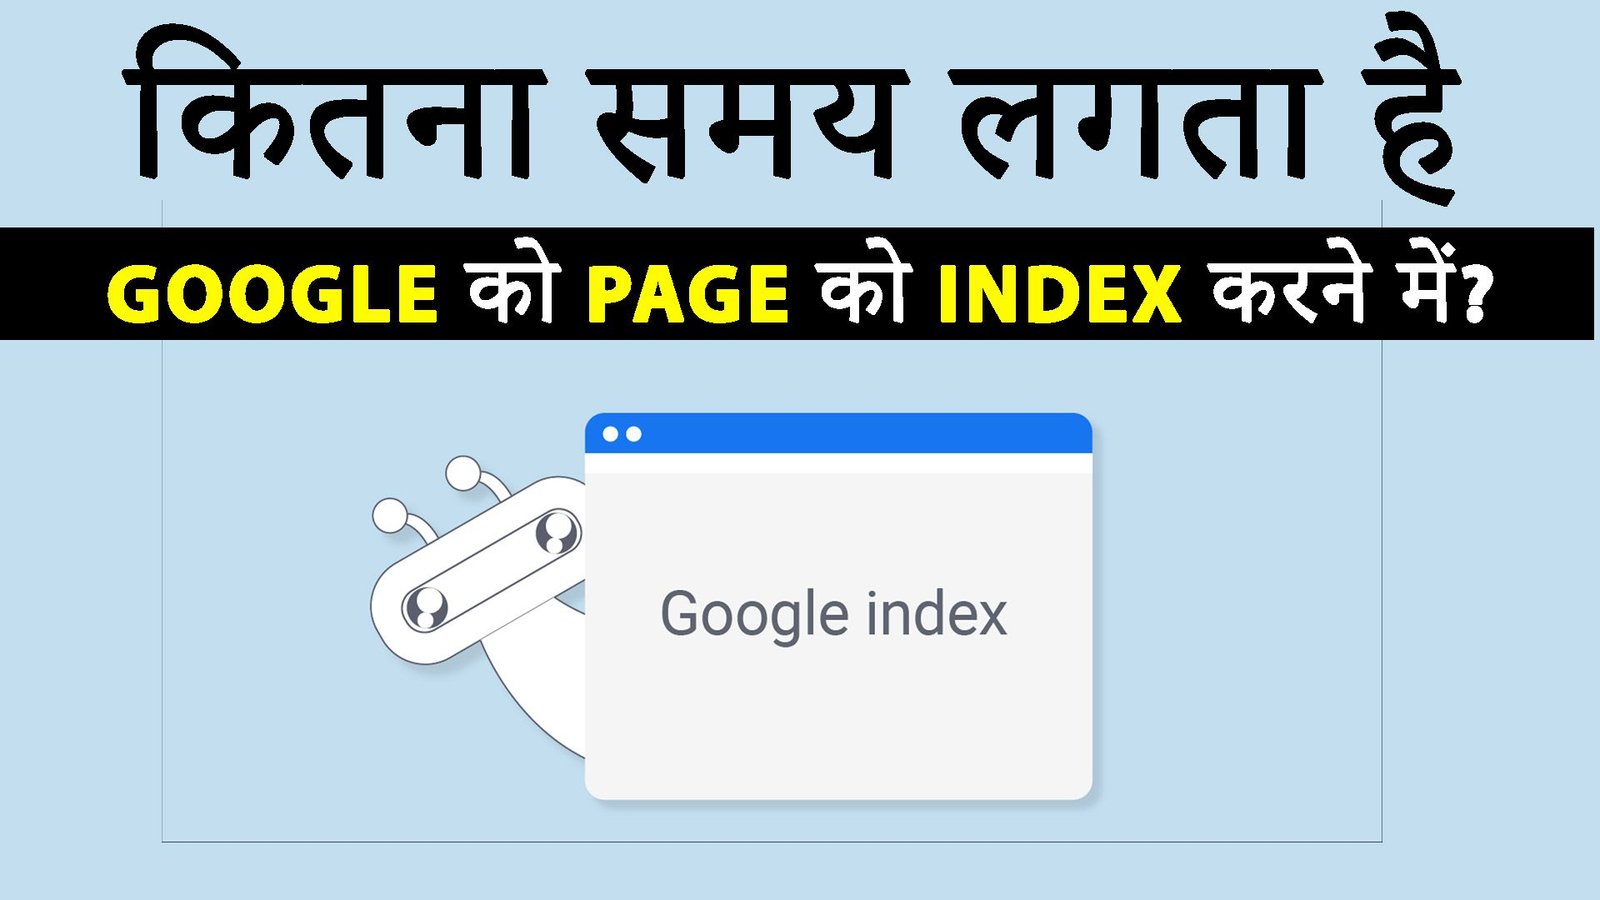 गूगल ने अपनी अद्वितीय खोज इंजन के साथ दुनियाभर में अपनी जगह बना रखी है, जिससे वेब पृष्ठों को इंडेक्स करना एक महत्वपूर्ण प्रक्रिया बन गई है। लेकिन सवाल यह है,How long does it take Google to index a page?